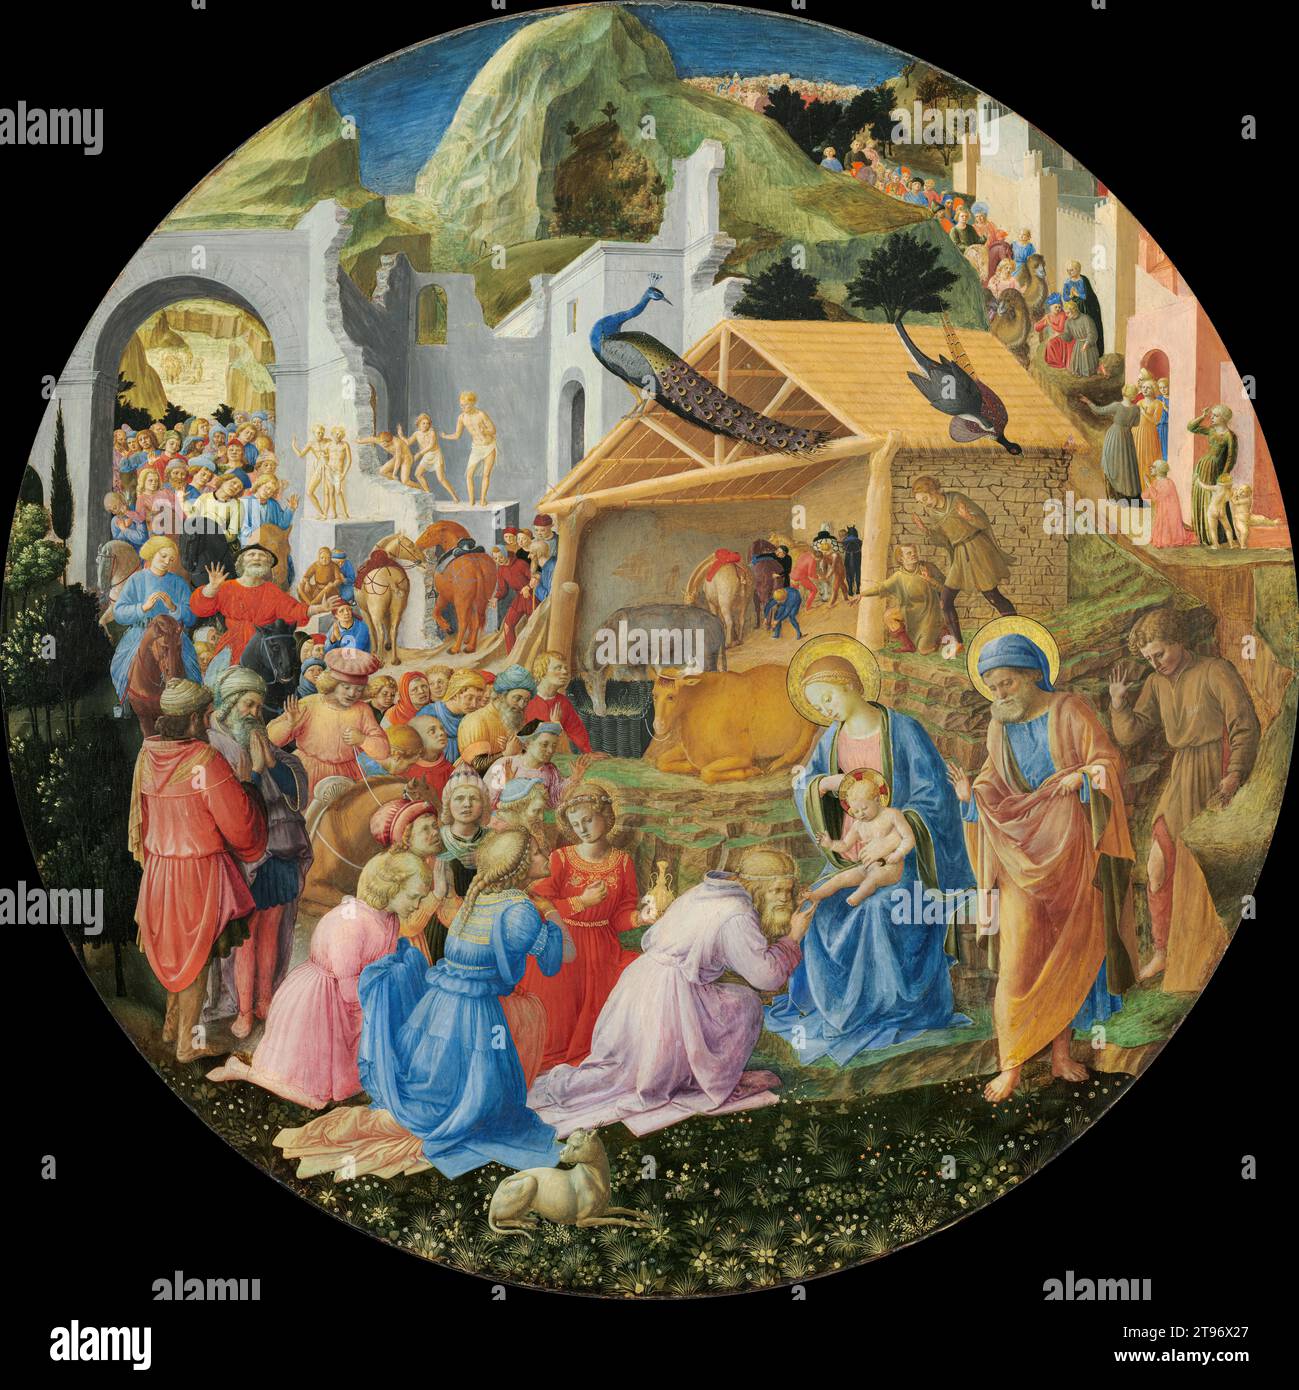 FRA Angelico, Filippo Lippi, l'adoration des Mages, 1450 circa ; tempera sur panneau de bois ; National Gallery of Art, Washington DC, États-Unis o Banque D'Images